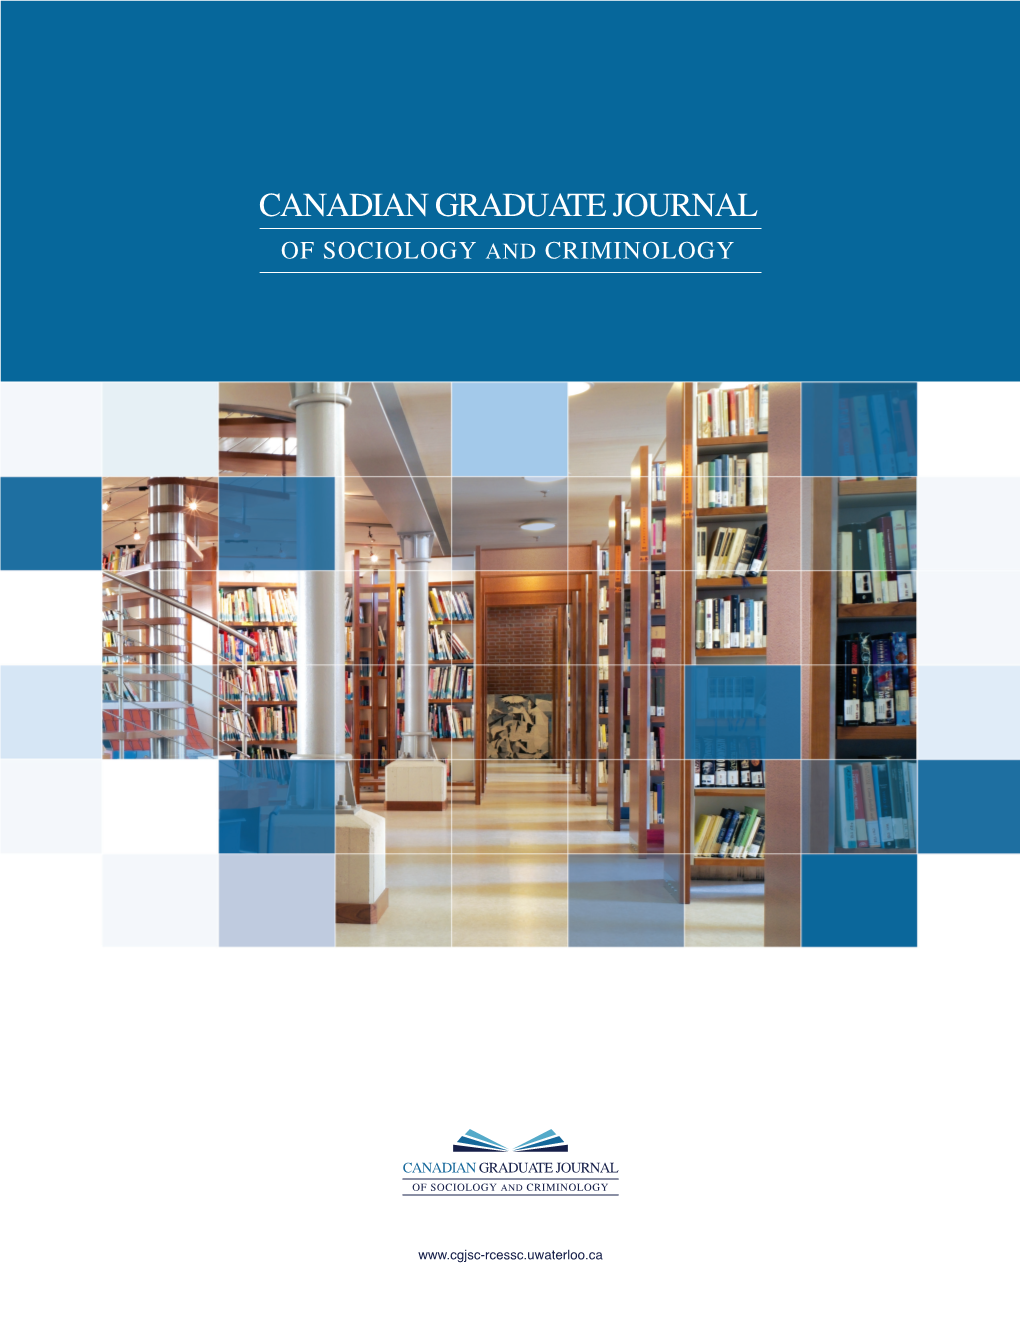 The Canadian Graduate Journal of Sociology and Criminology La Revue Canadienne Des Etudes Supérieures En Sociologie Et Criminologie